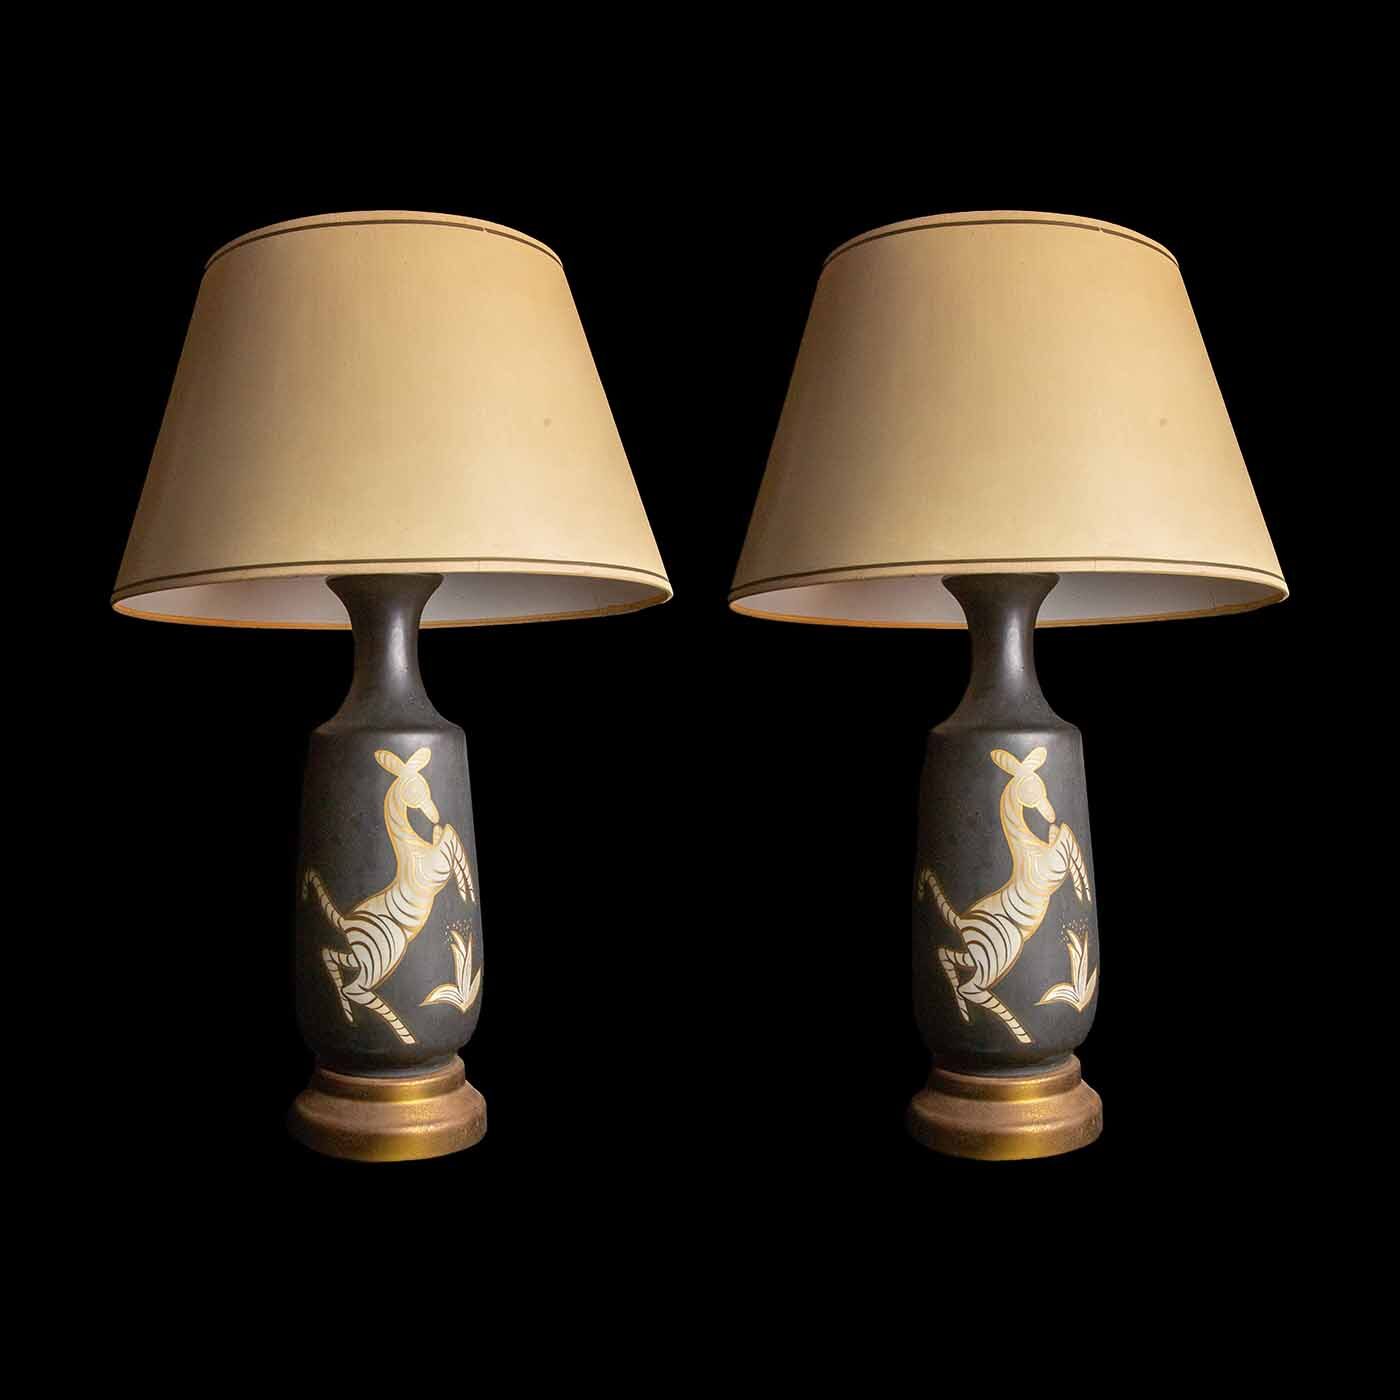 Pair of Mid Century Ceramic Zebra Lamps